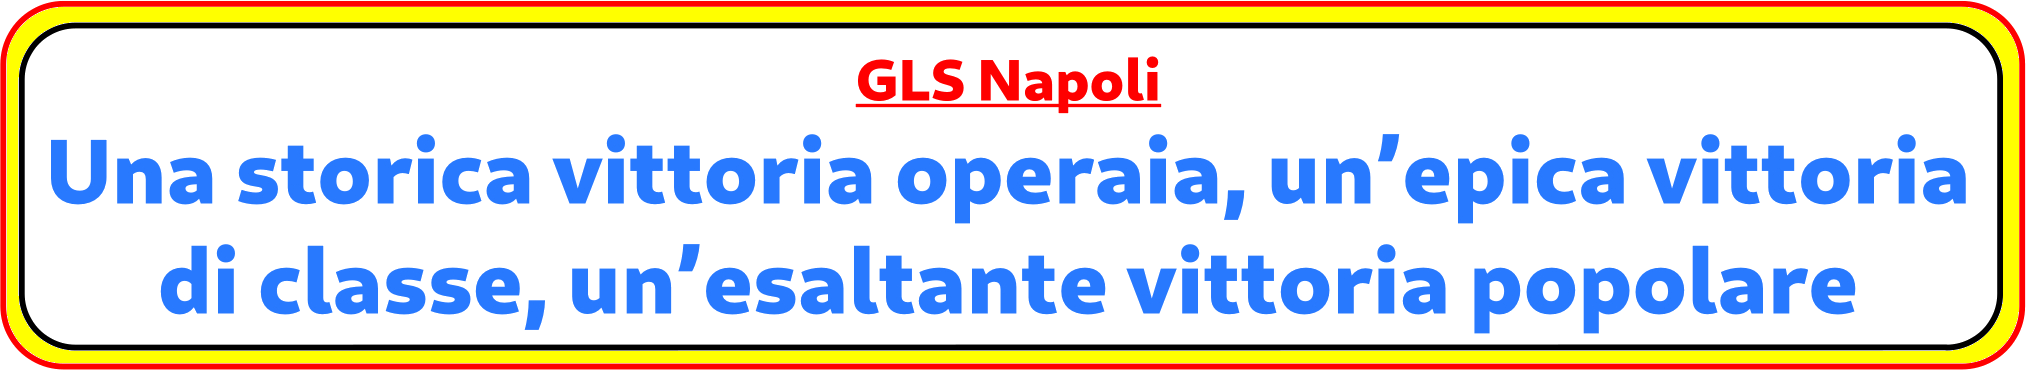 Vittoria alla GLS di Napoli